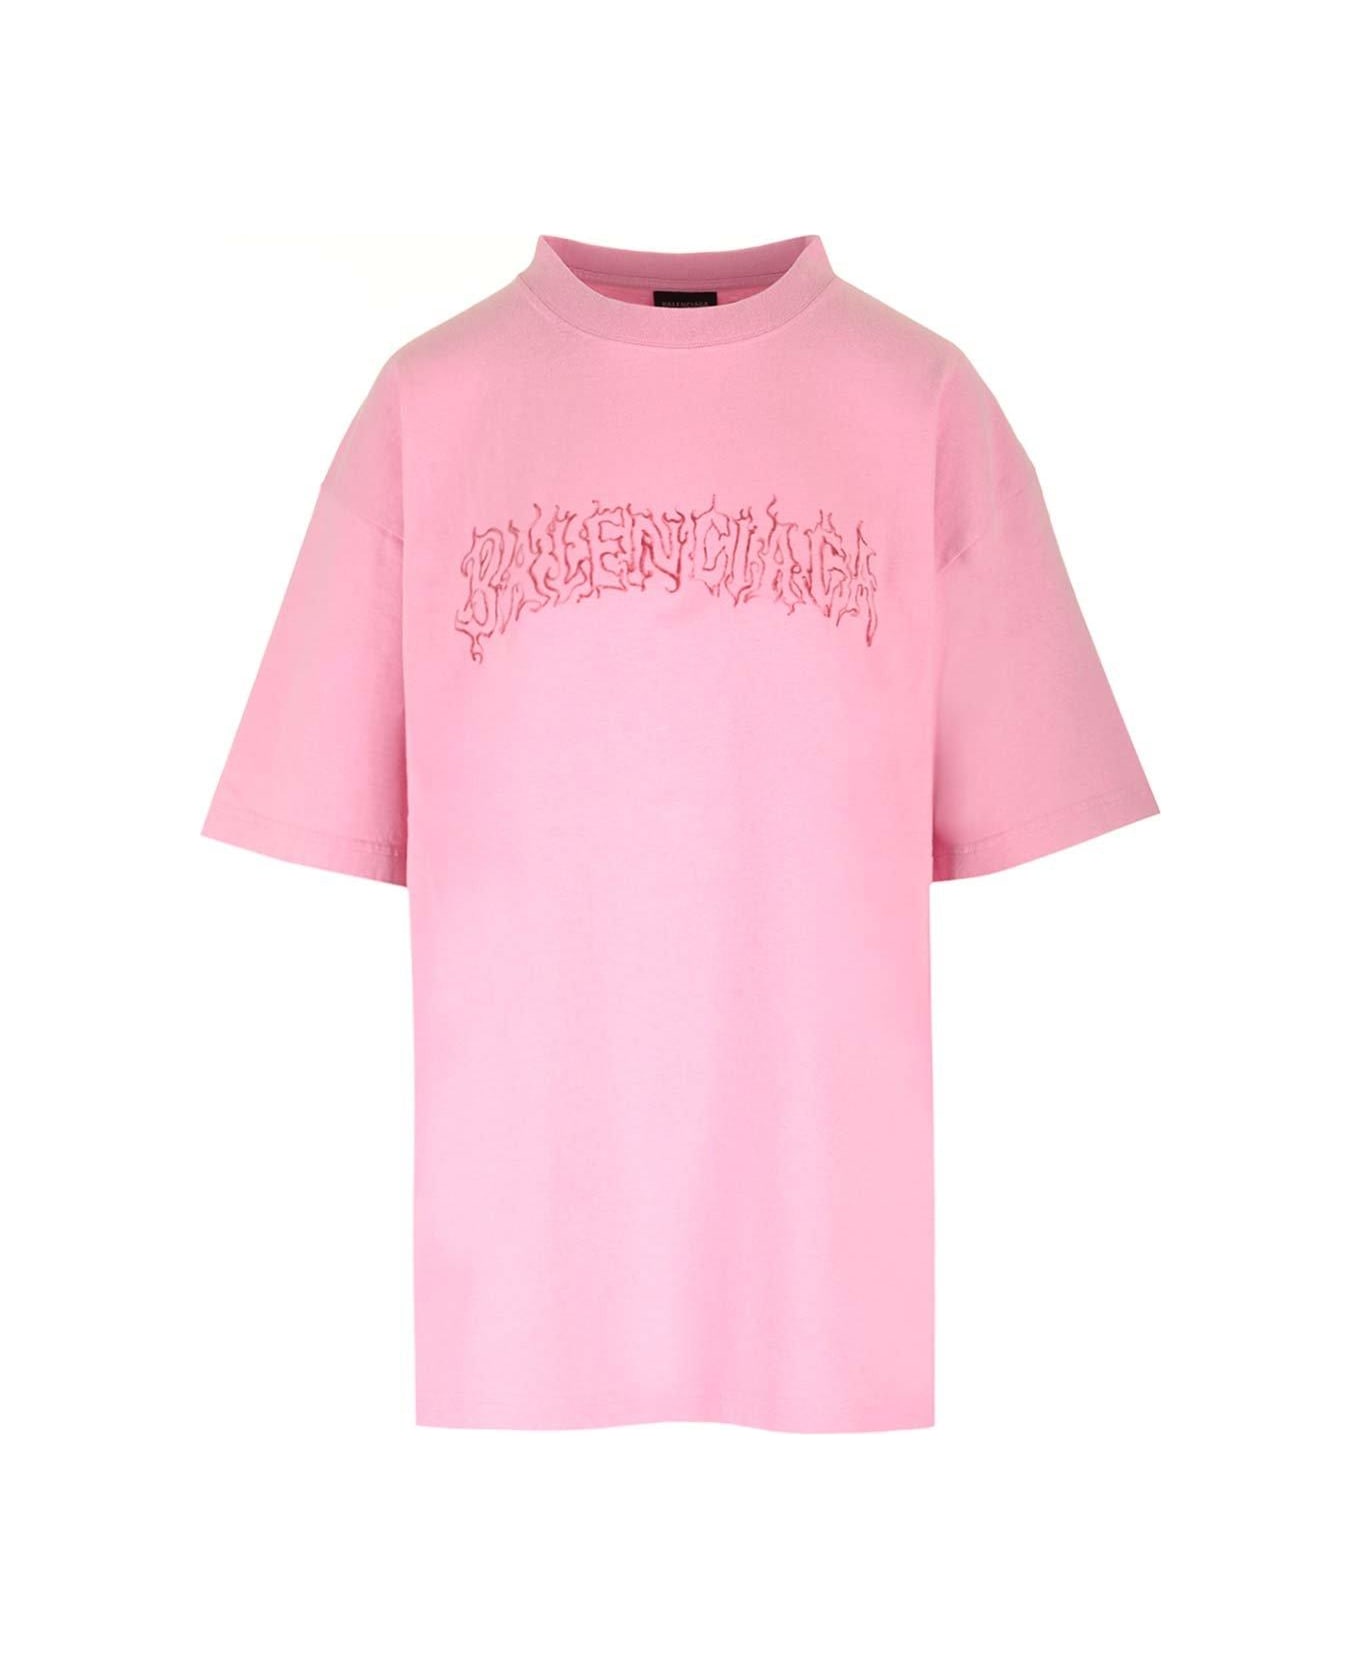 Balenciaga Logo Printed Crewneck T-shirt - Pink/red